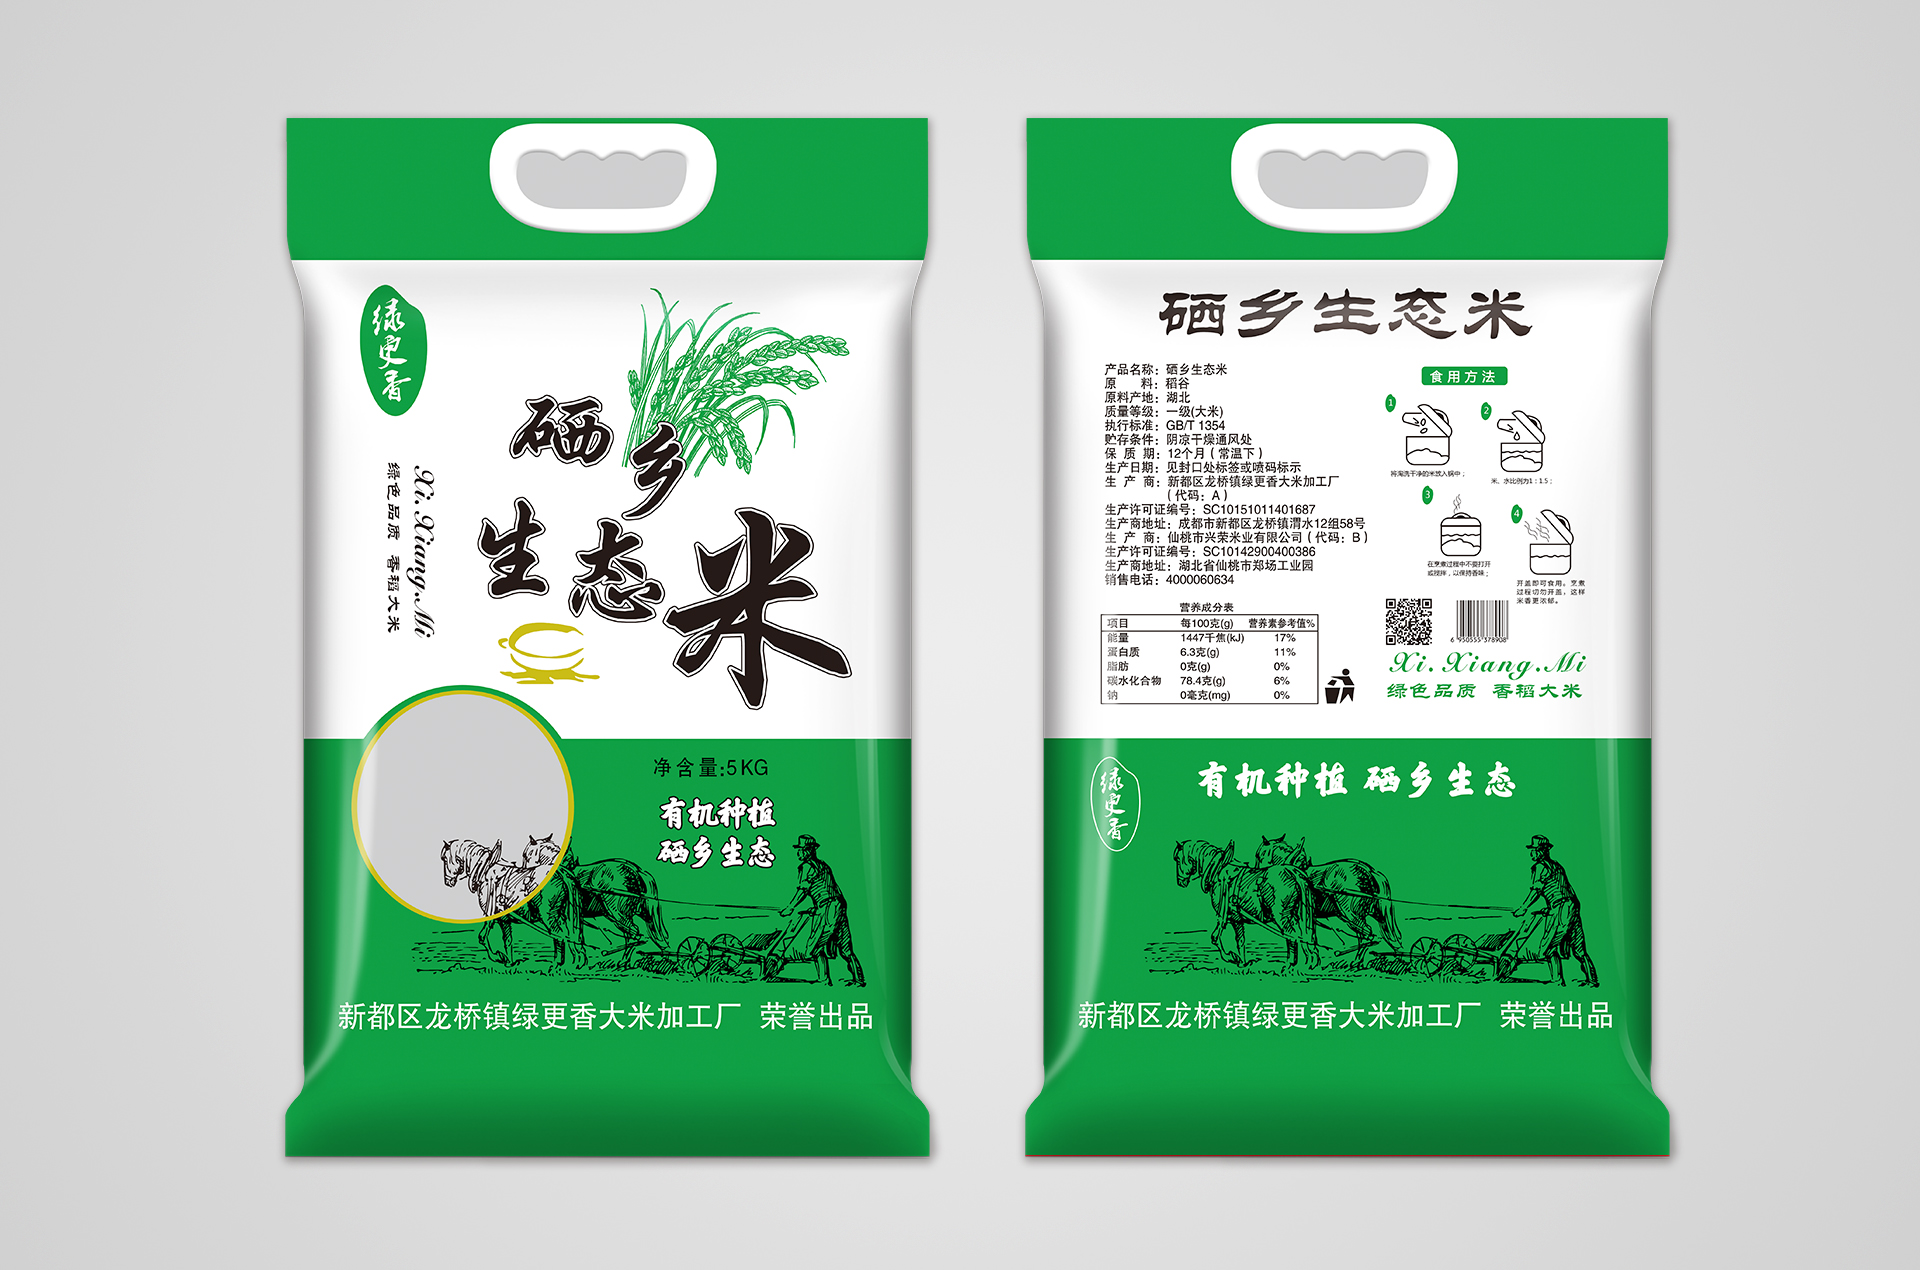 绿更香：5KG硒乡生态米